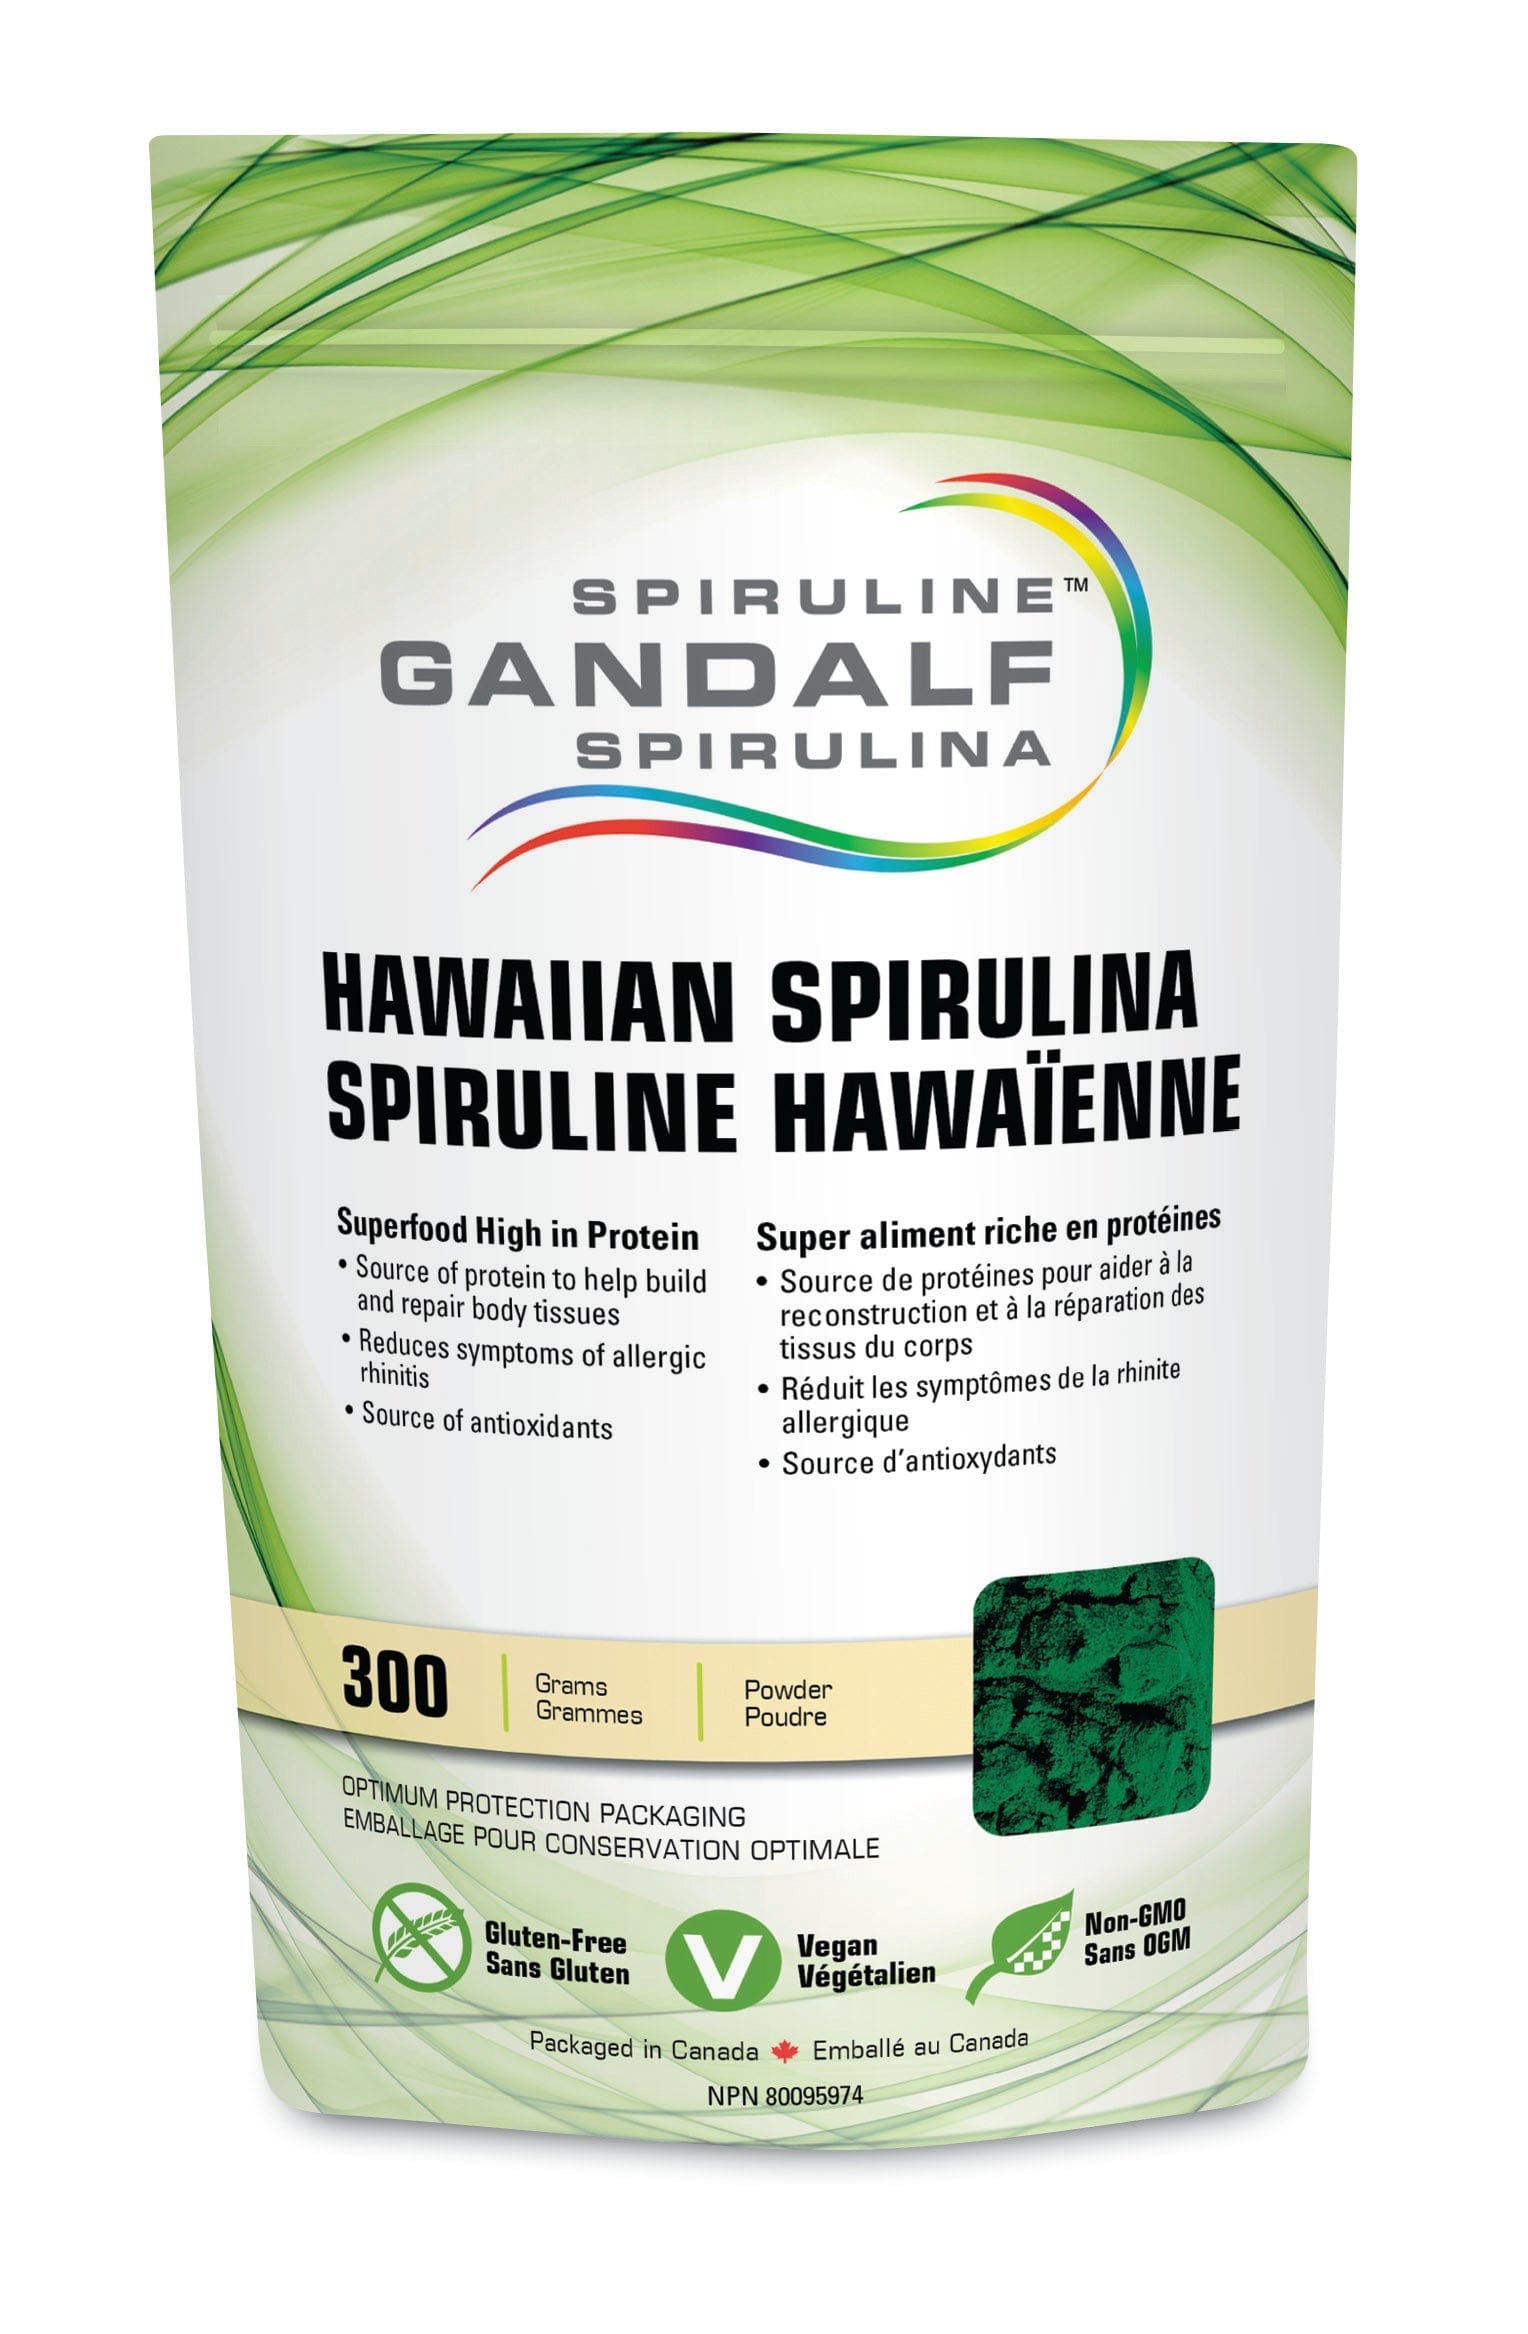 GANDALF Suppléments Spiruline 300g